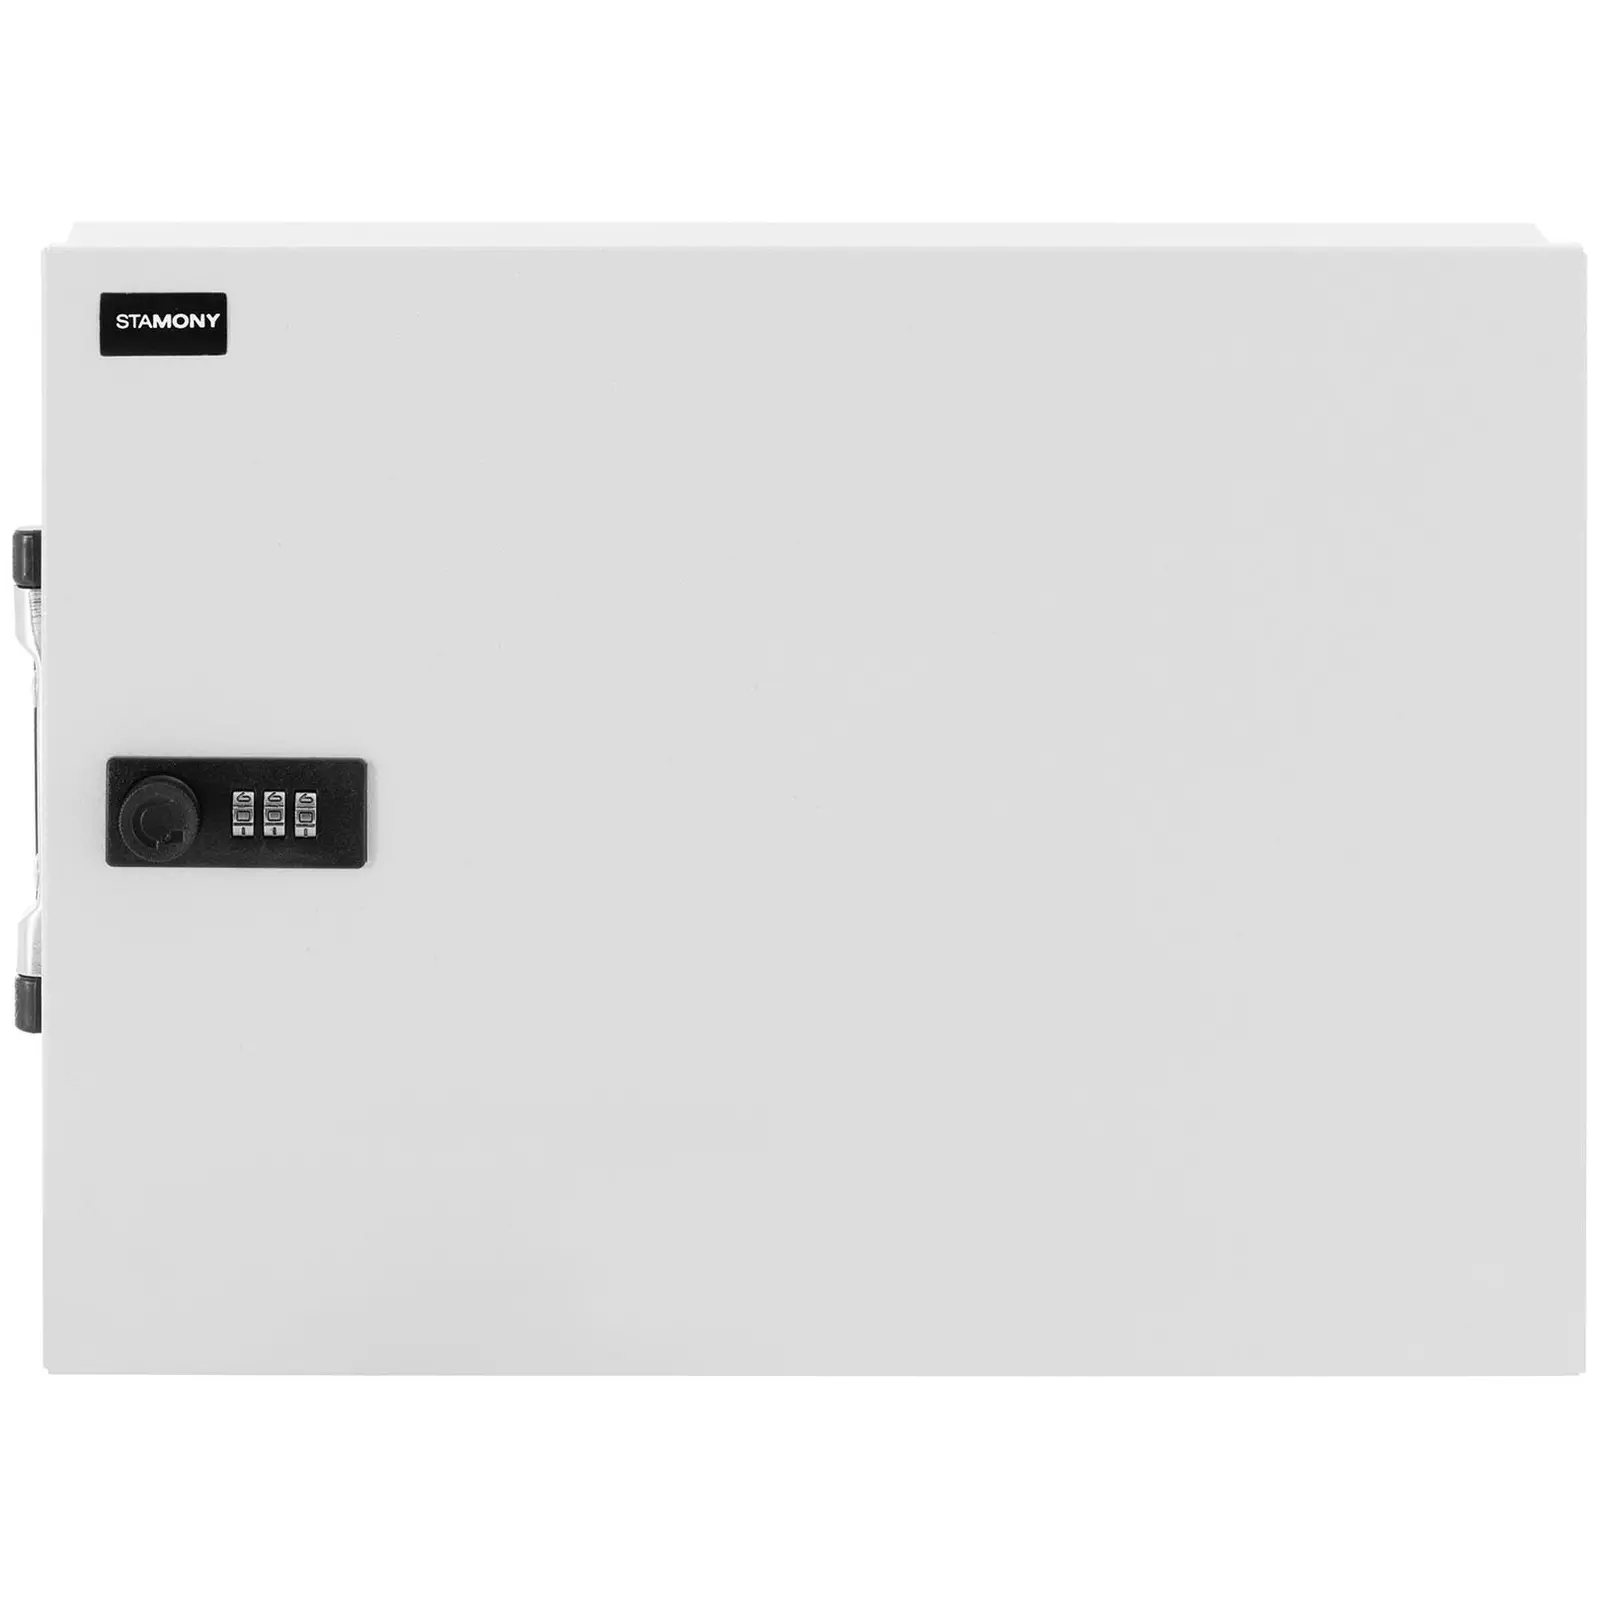 Dokumentenkassette - 355 x 255 x 70 mm - DIN A4 - Zahlenschloss